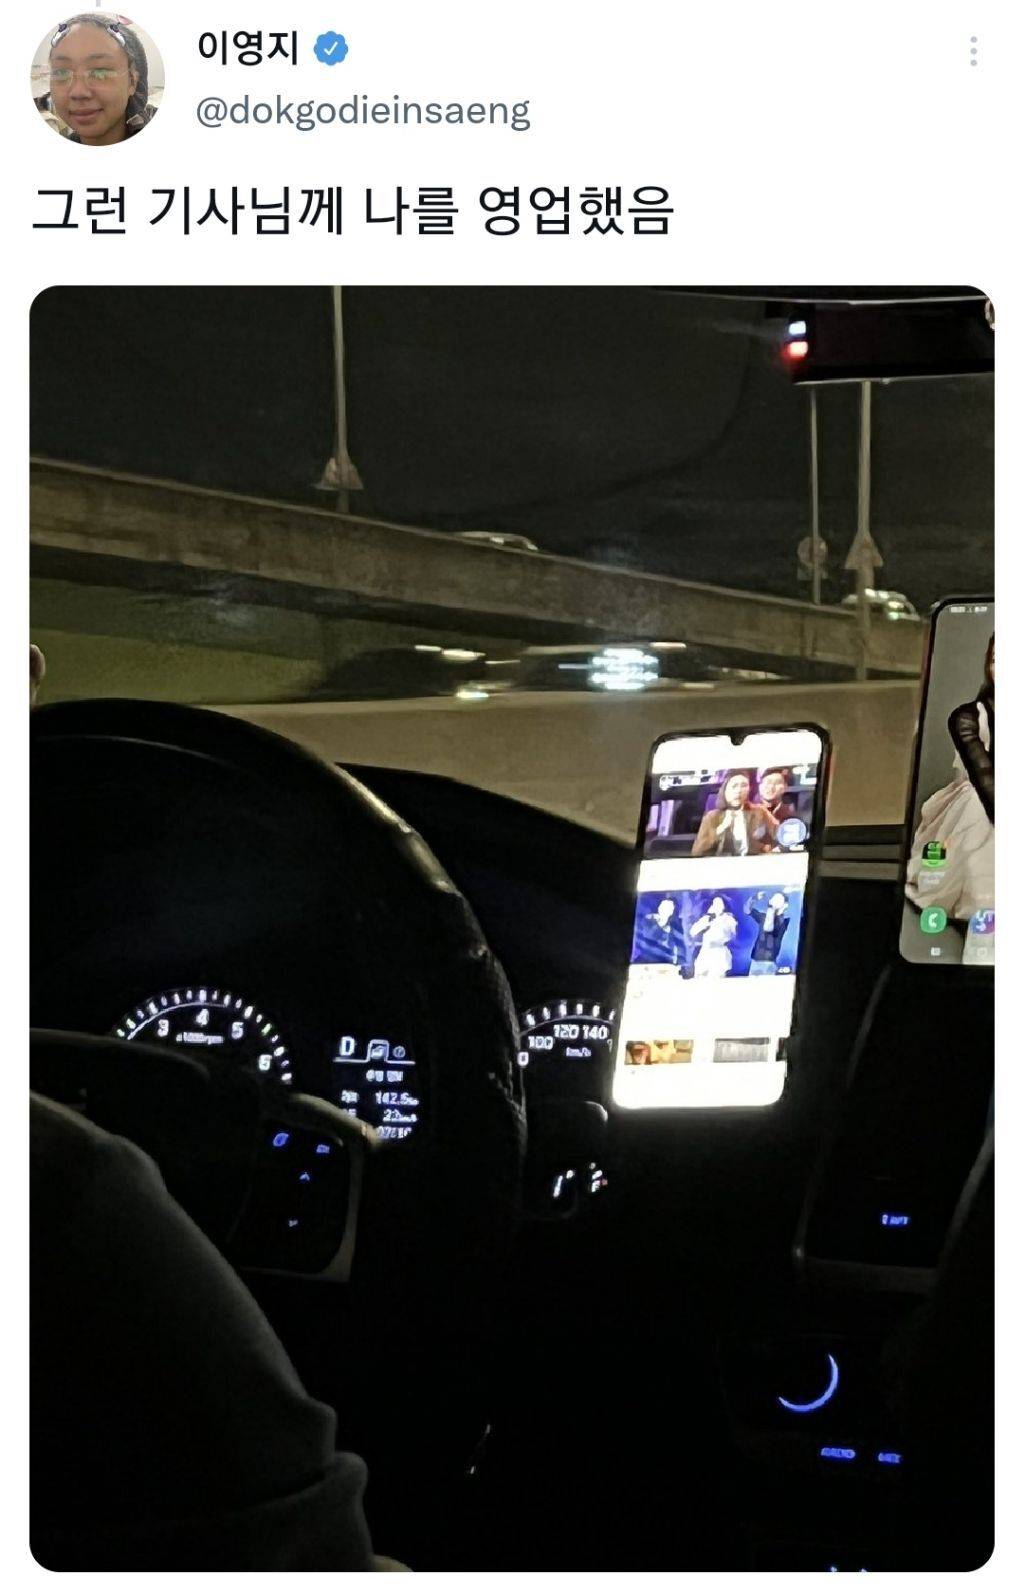 홍자 팬클럽 택시에 타게 된 이영지